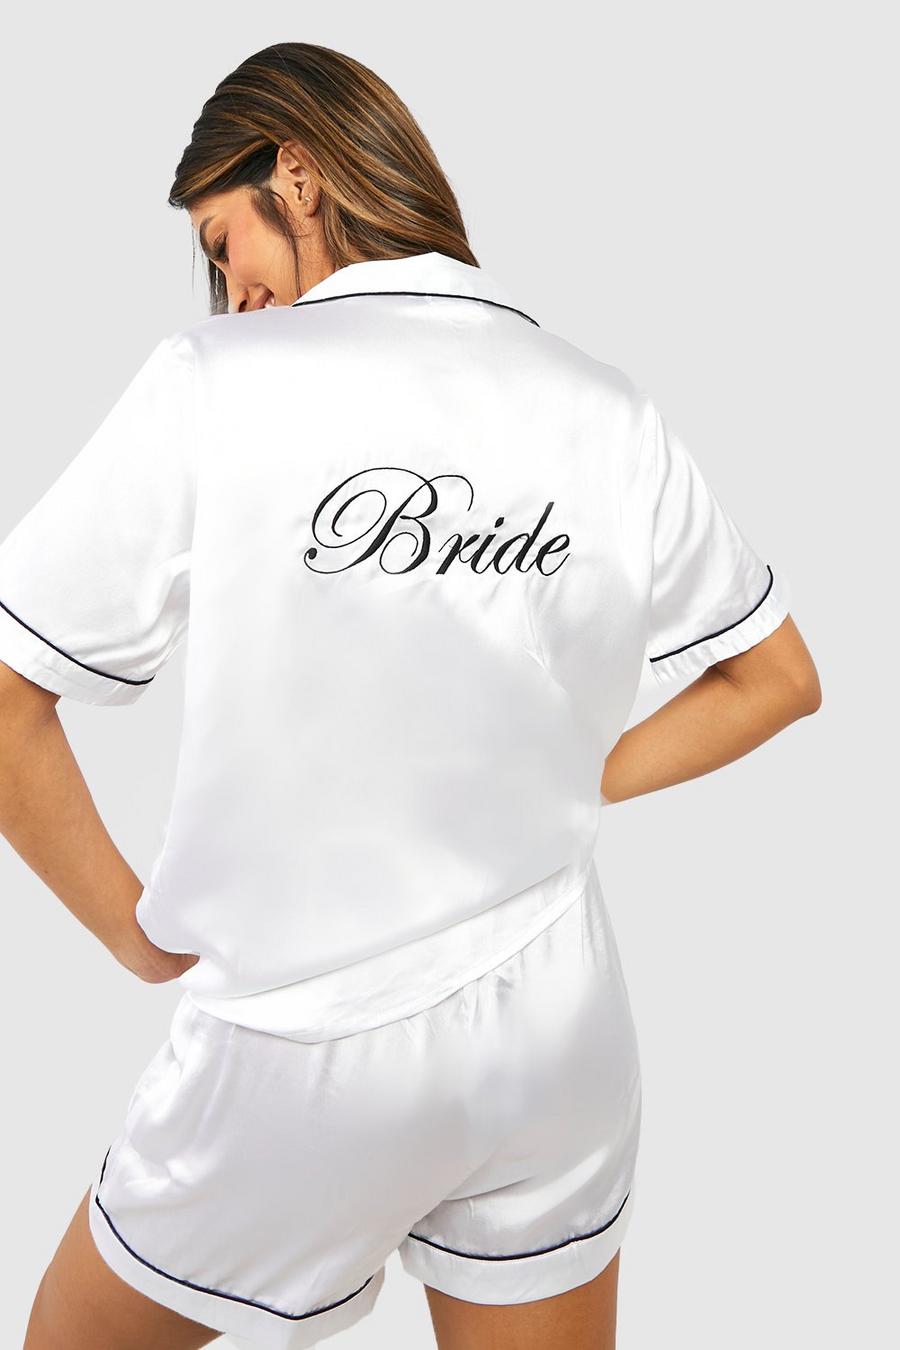 Satin Pyjama-Set mit Bride Stickerei, White weiß